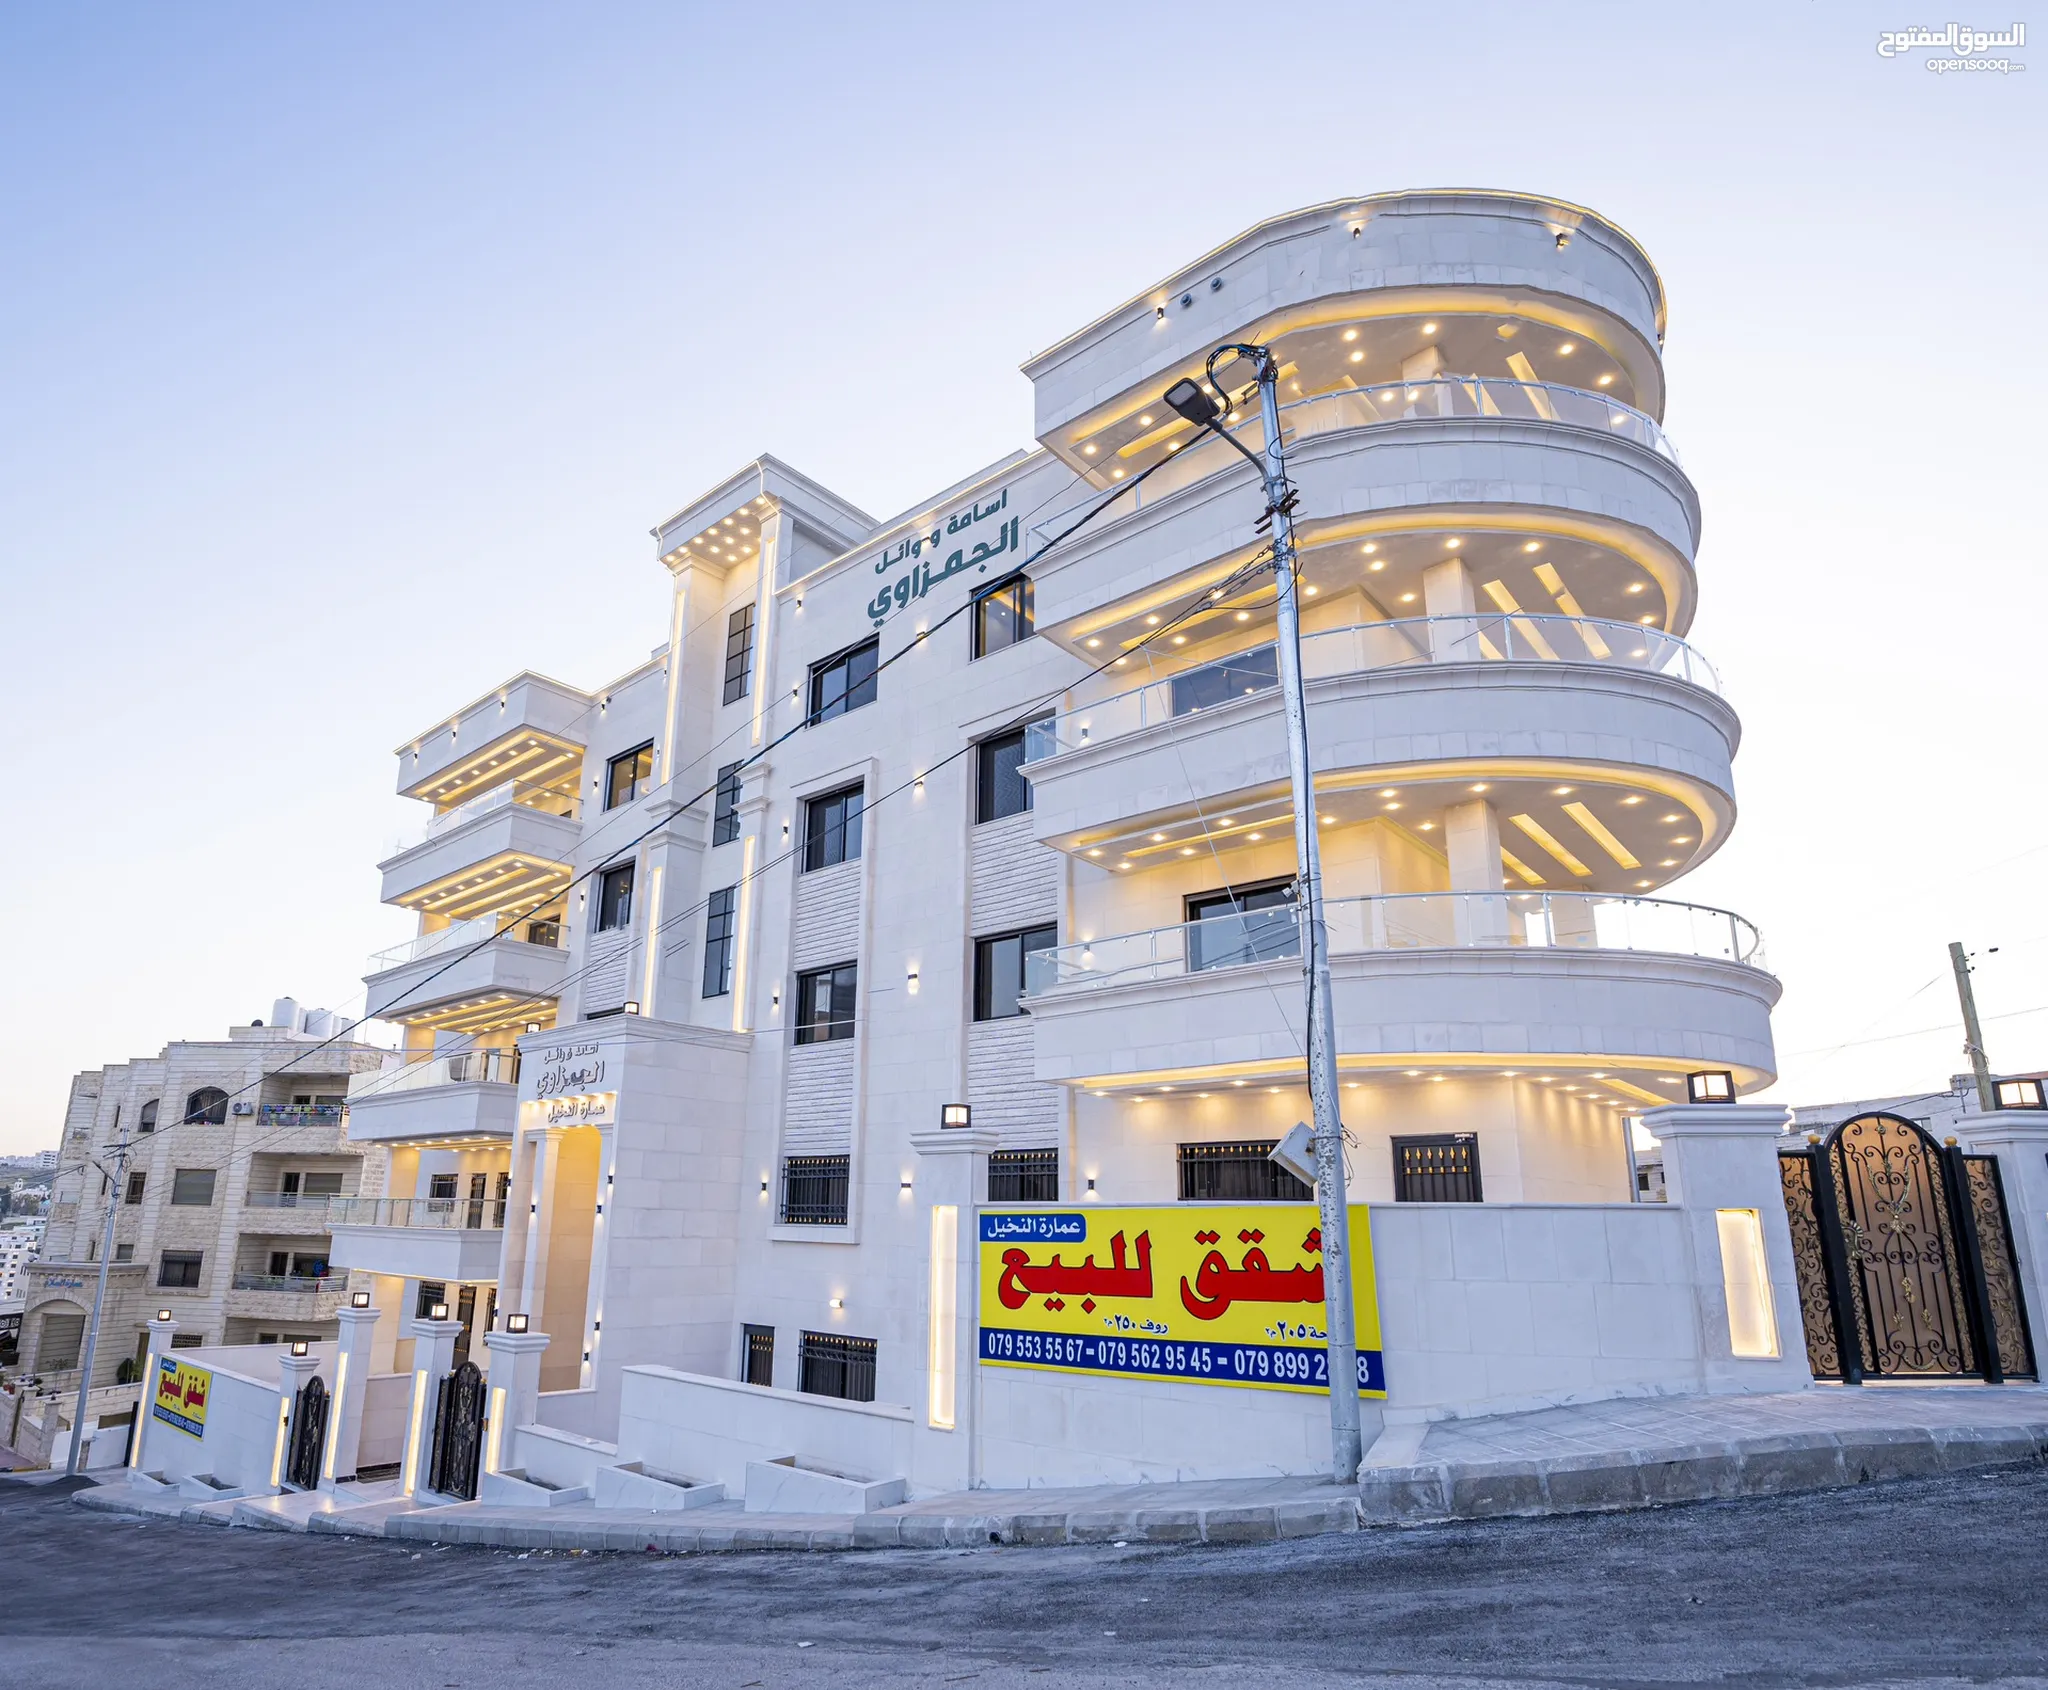 شقق للبيع 3 غرف نوم في شفا بدران عمان : السوق المفتوح